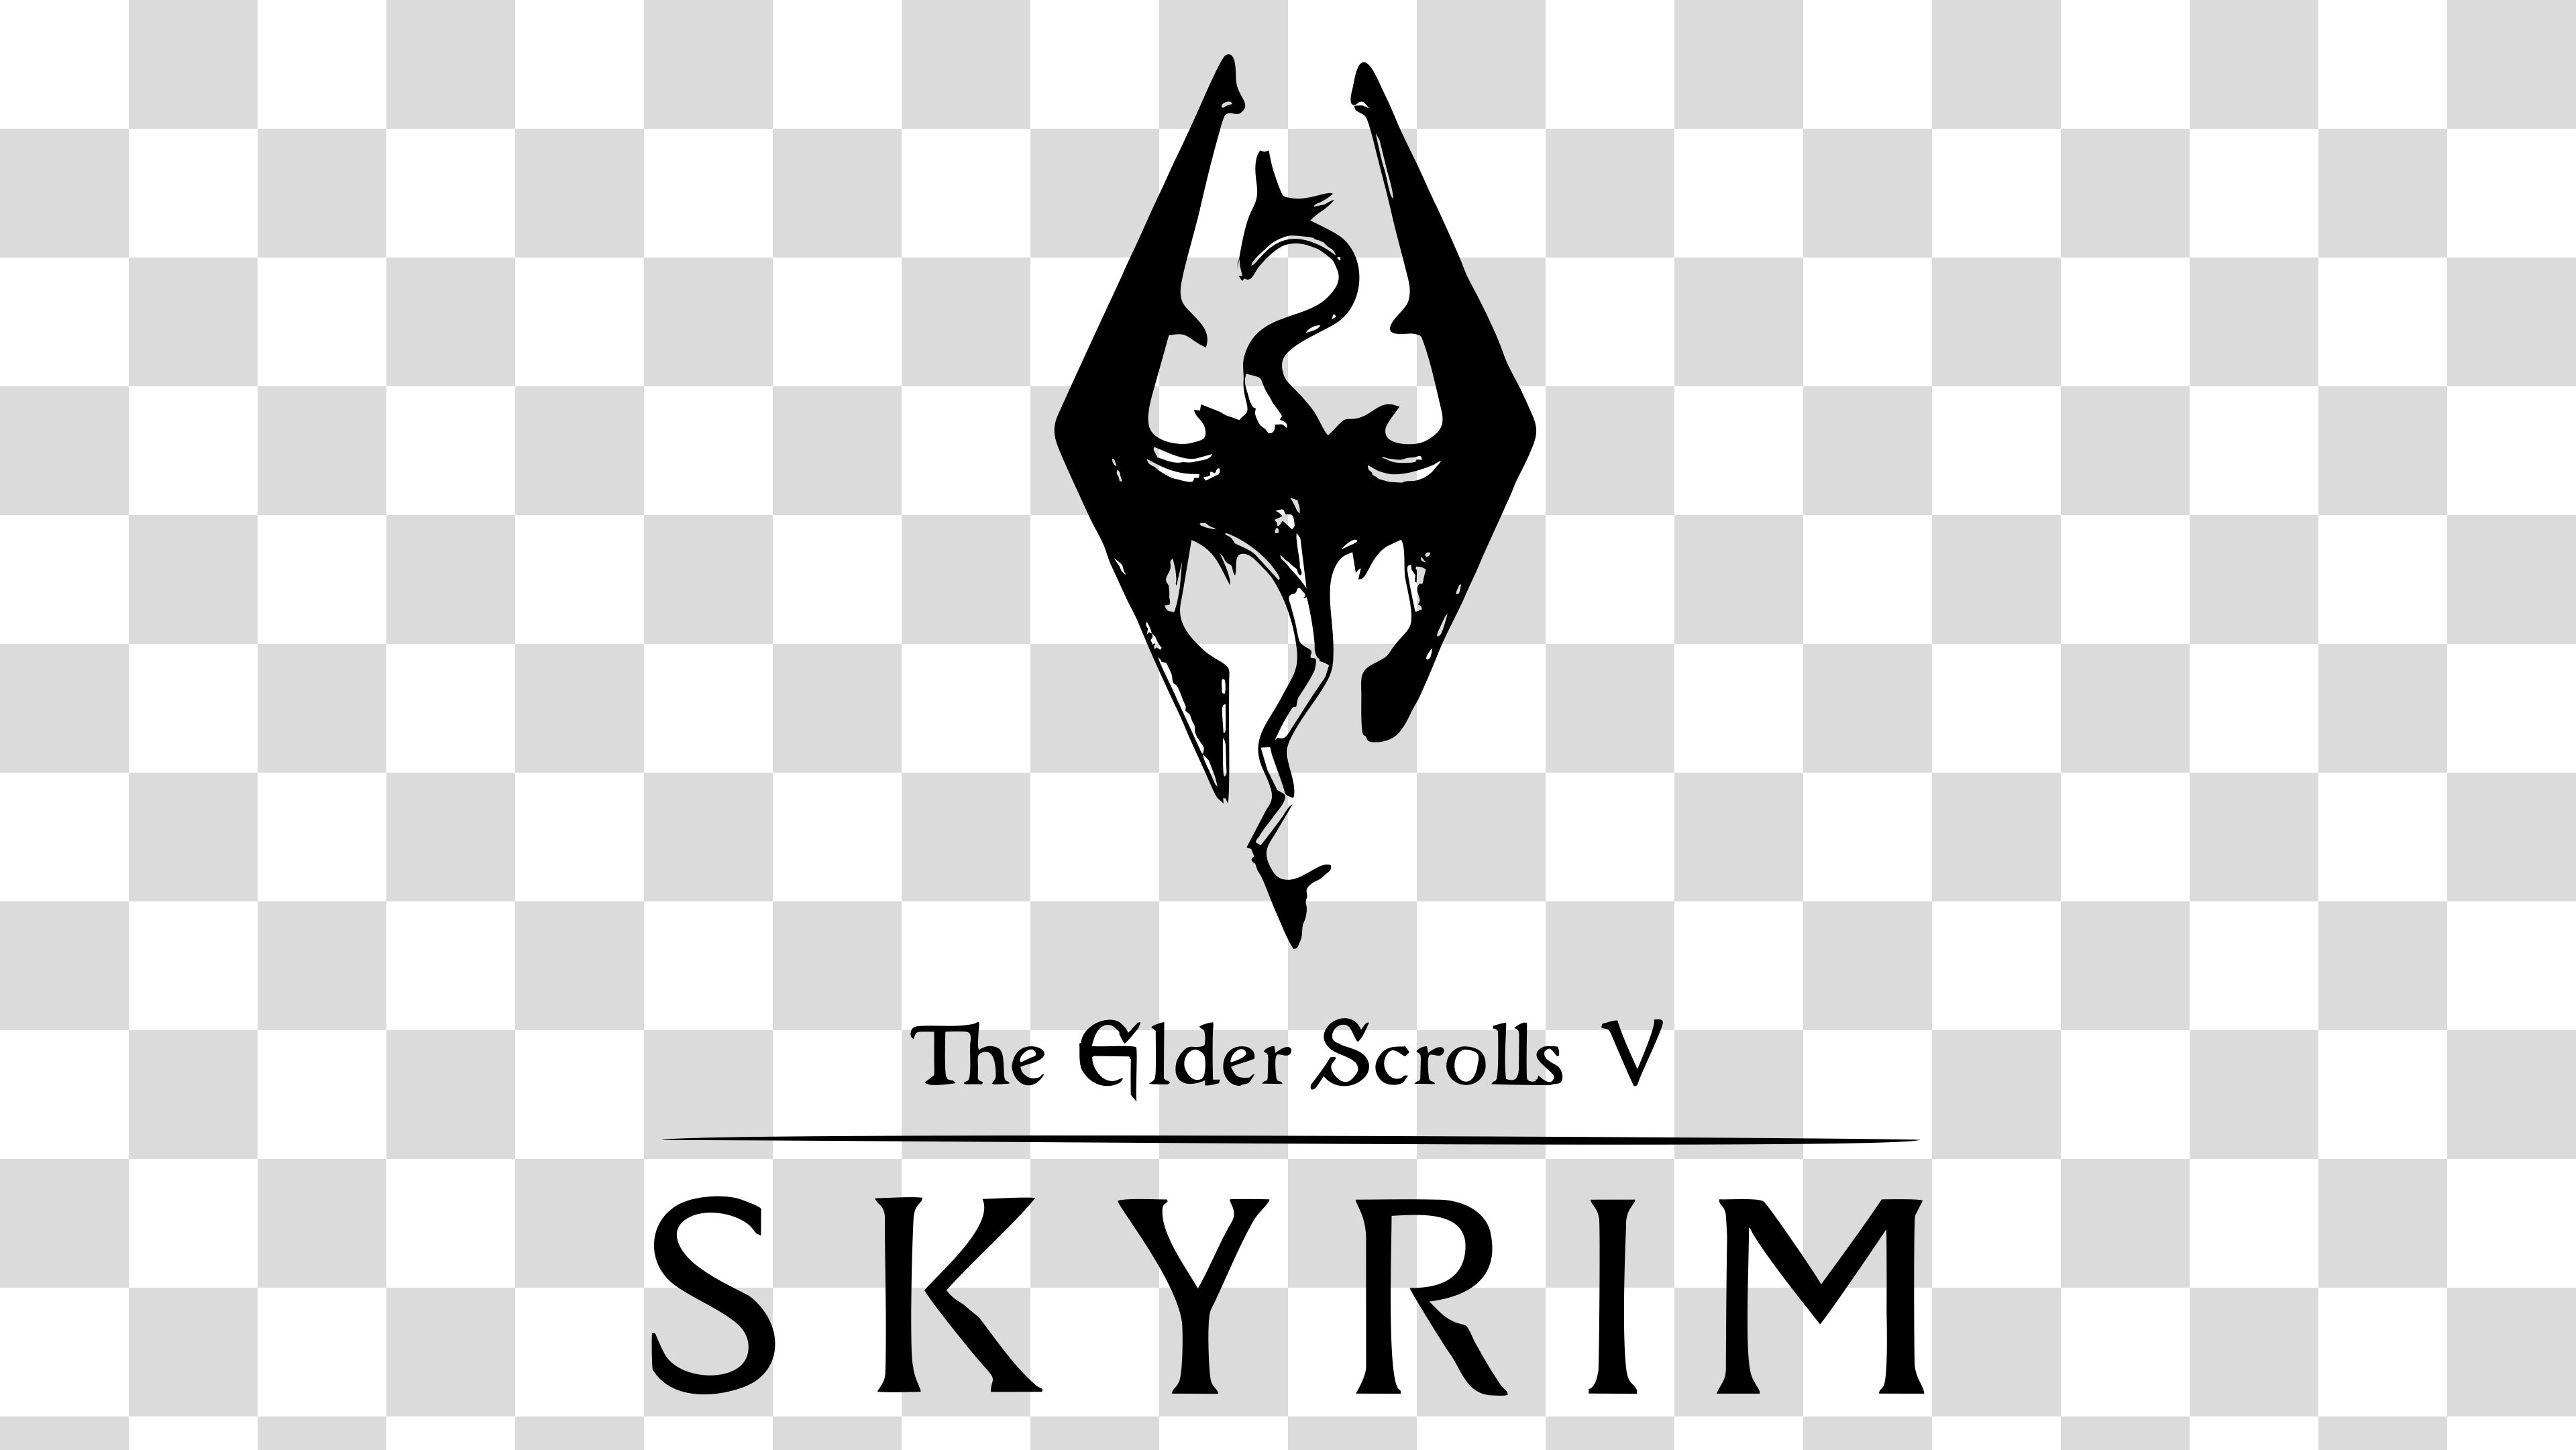 The Elder Scrolls V: Skyrim Logo PNG Transparent Image